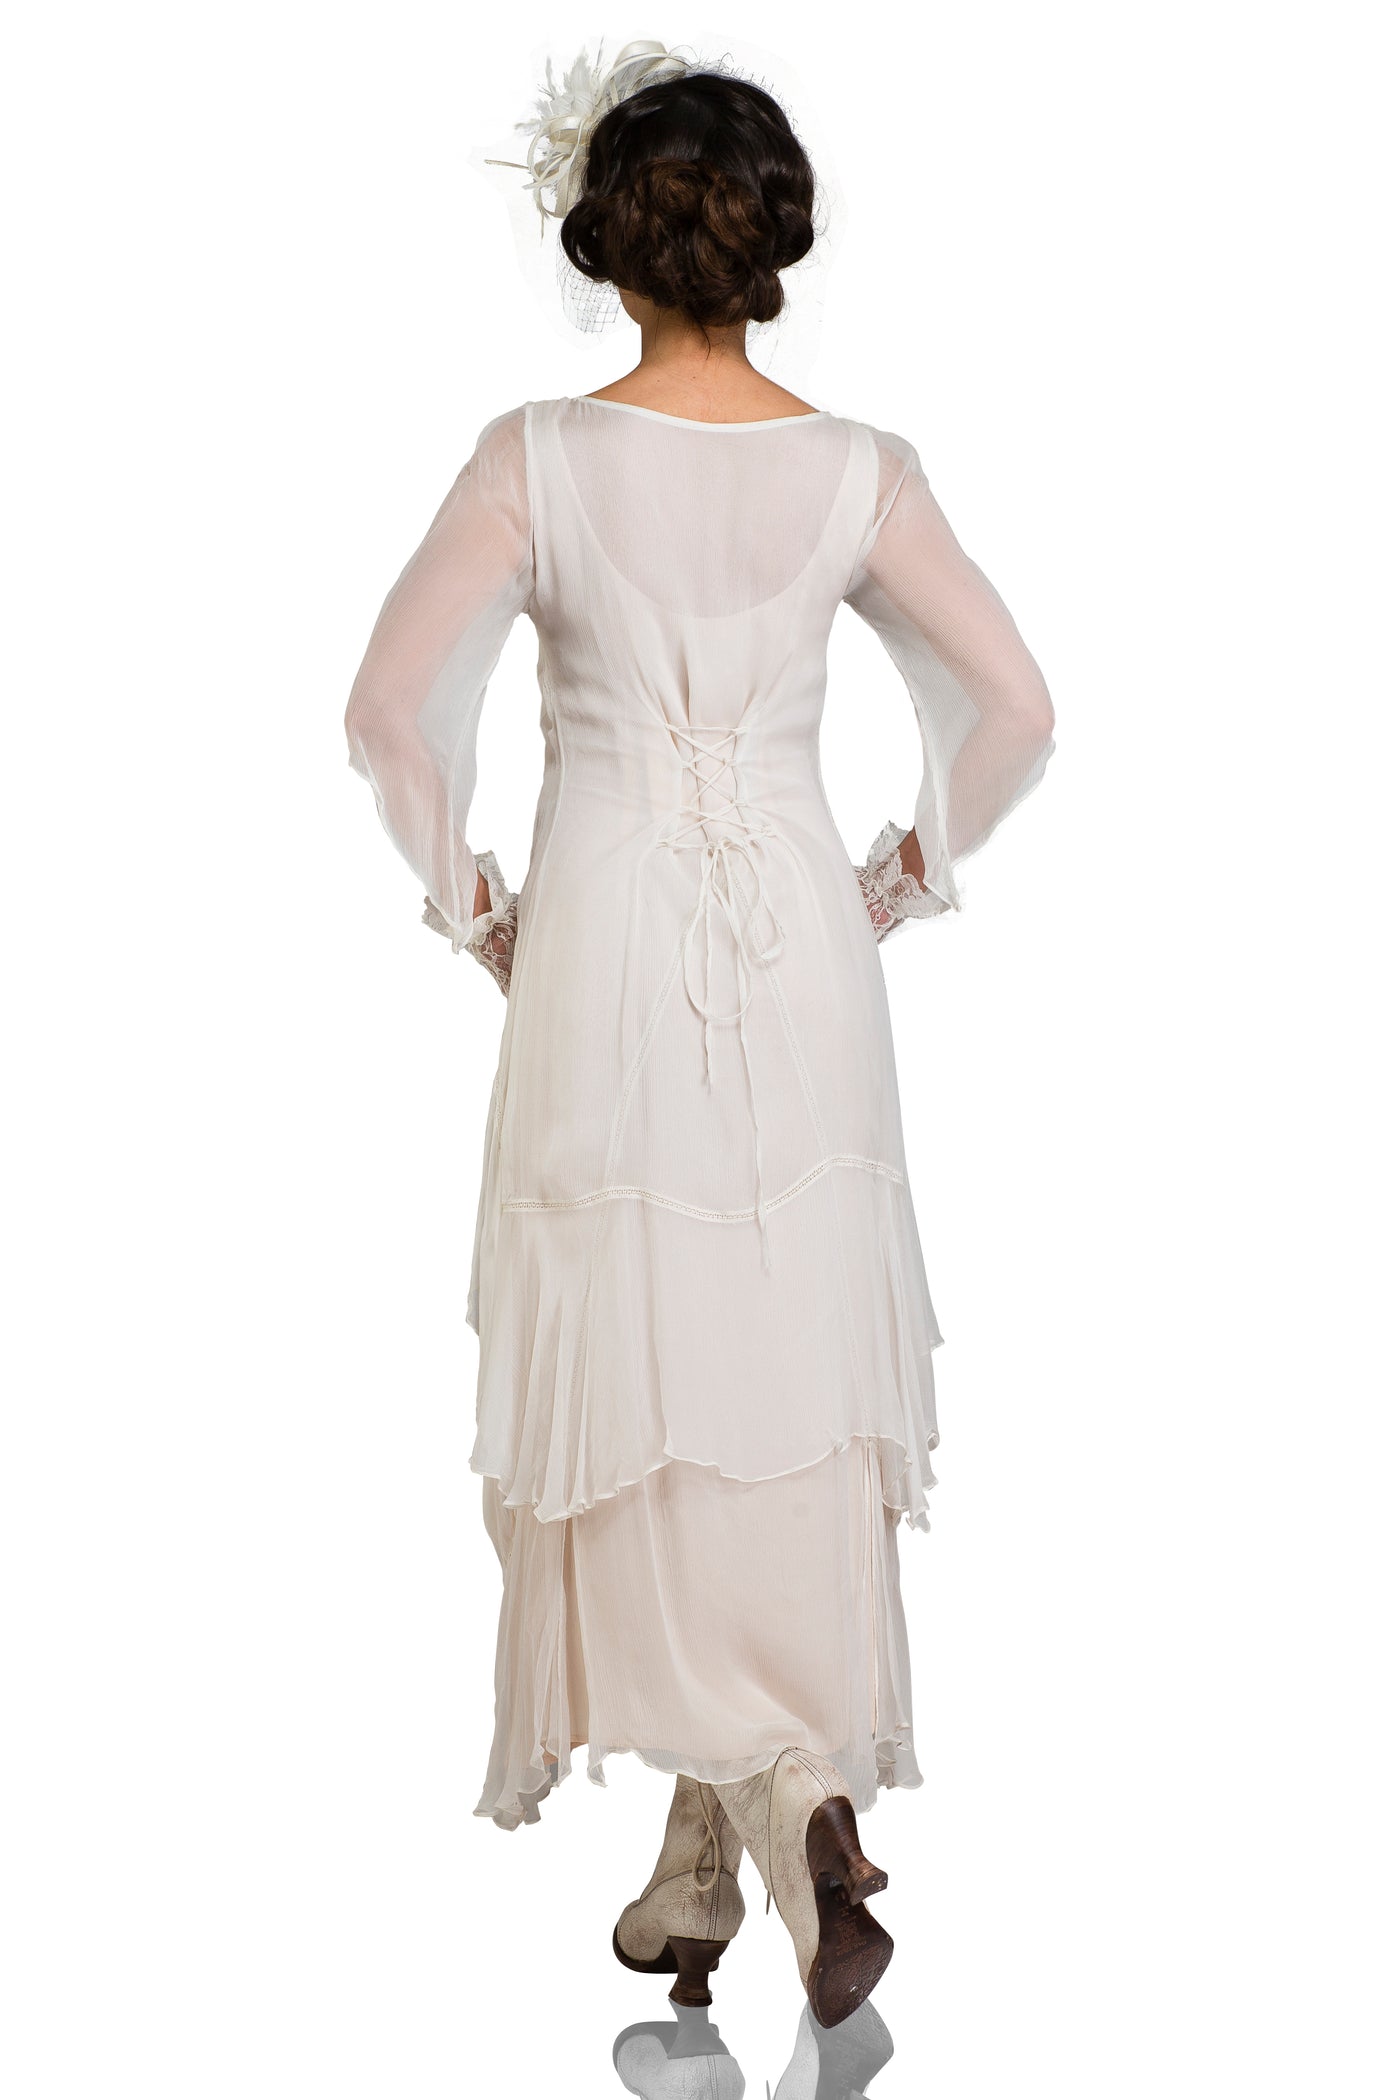 Nataya 10709 Vintage Inspired Wedding Dress in Ivory